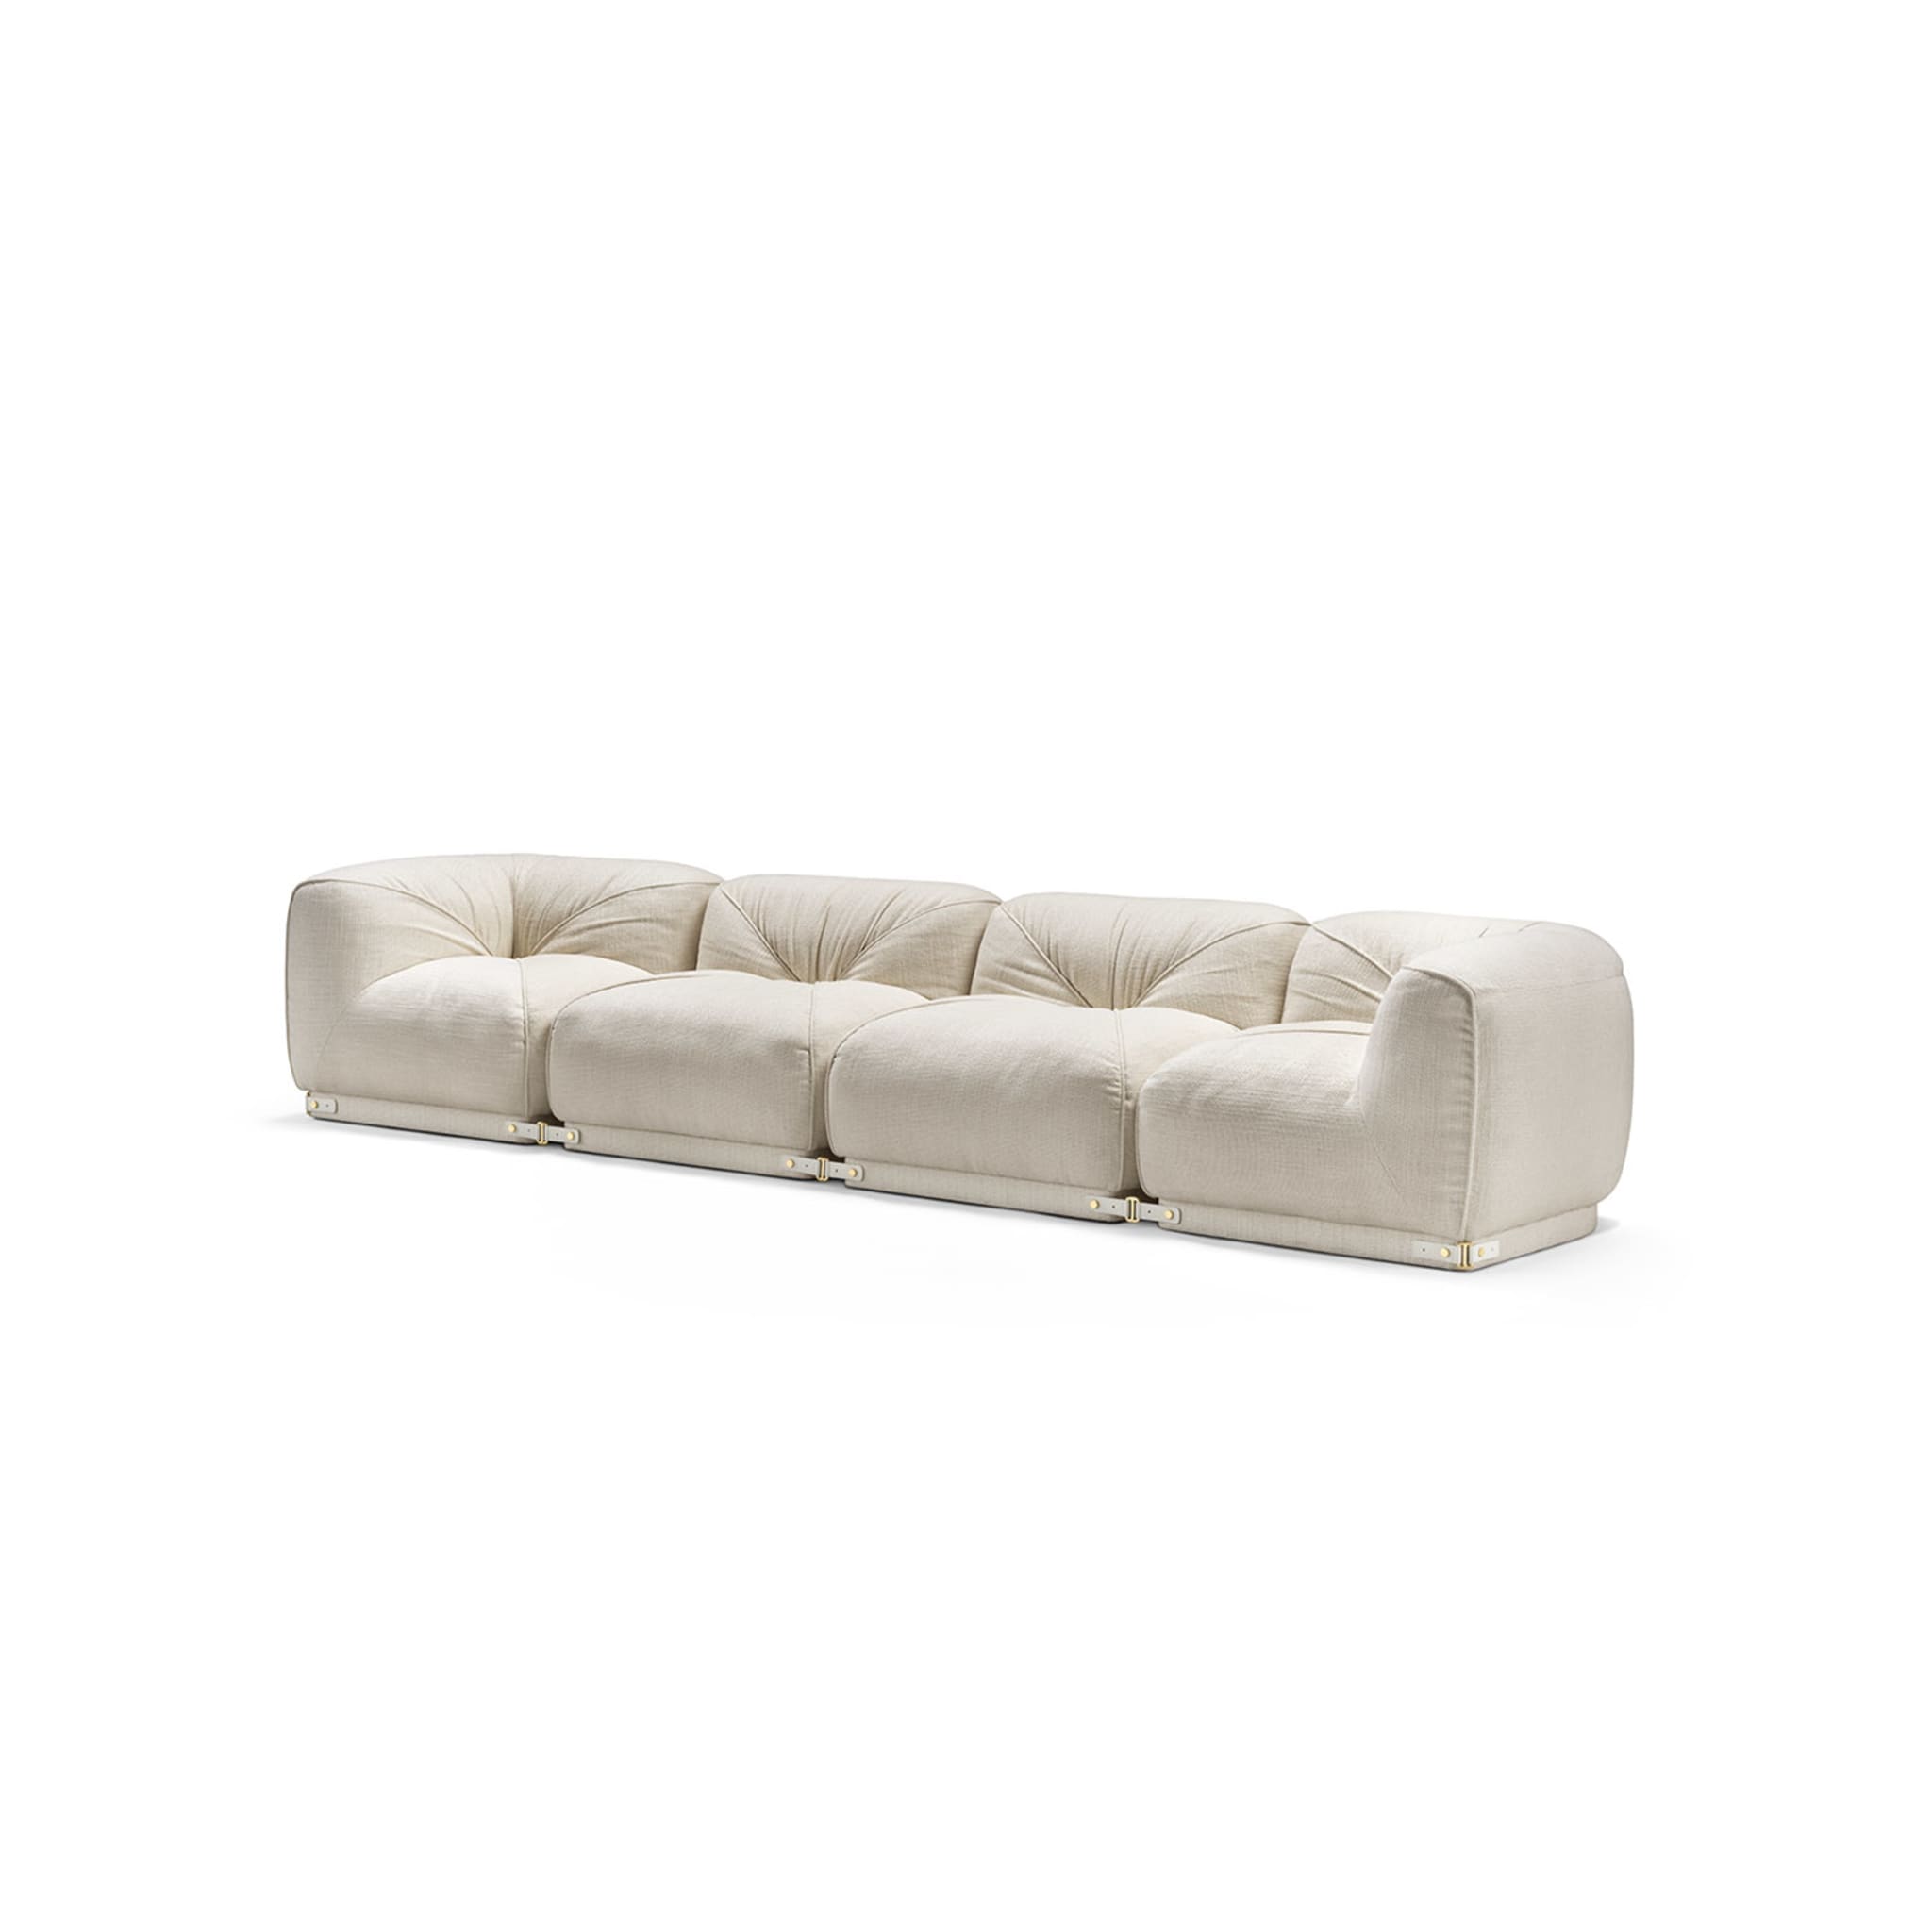 Leisure 4-Seater White Sofa by Lorenza Bozzoli - Alternative view 1